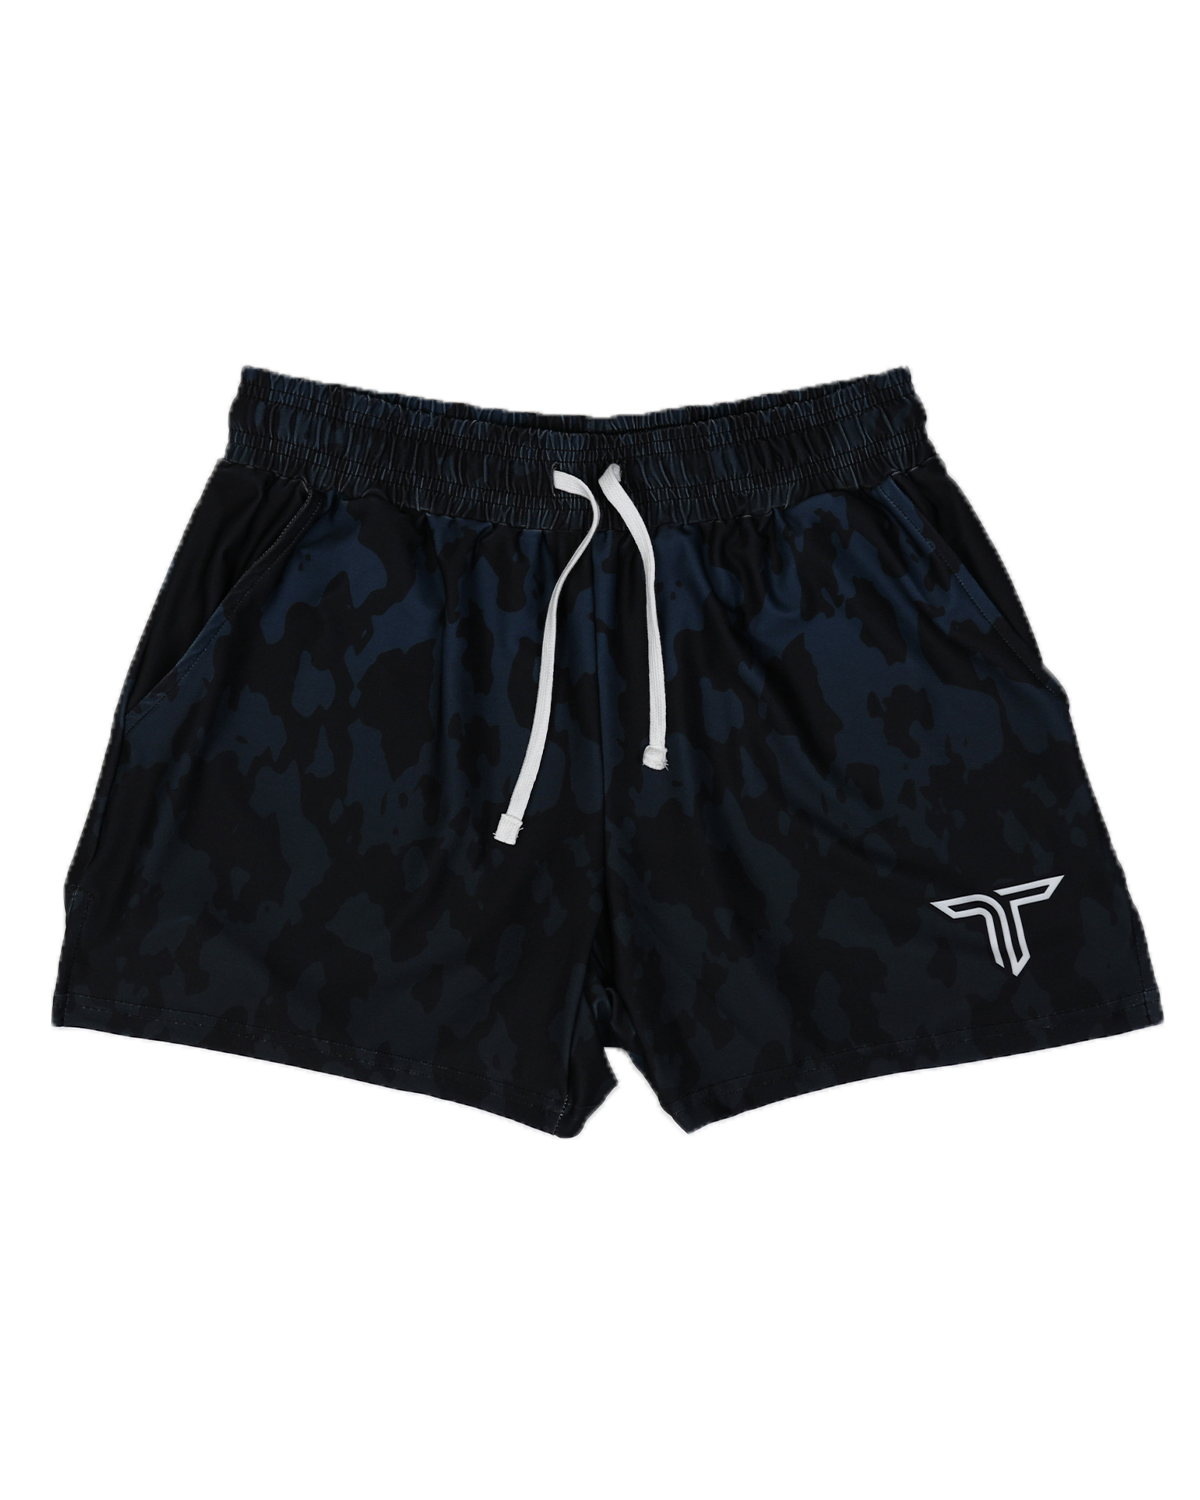 TD-GS-003 360° Custom Gym Shorts (5"&7“ Inseam)